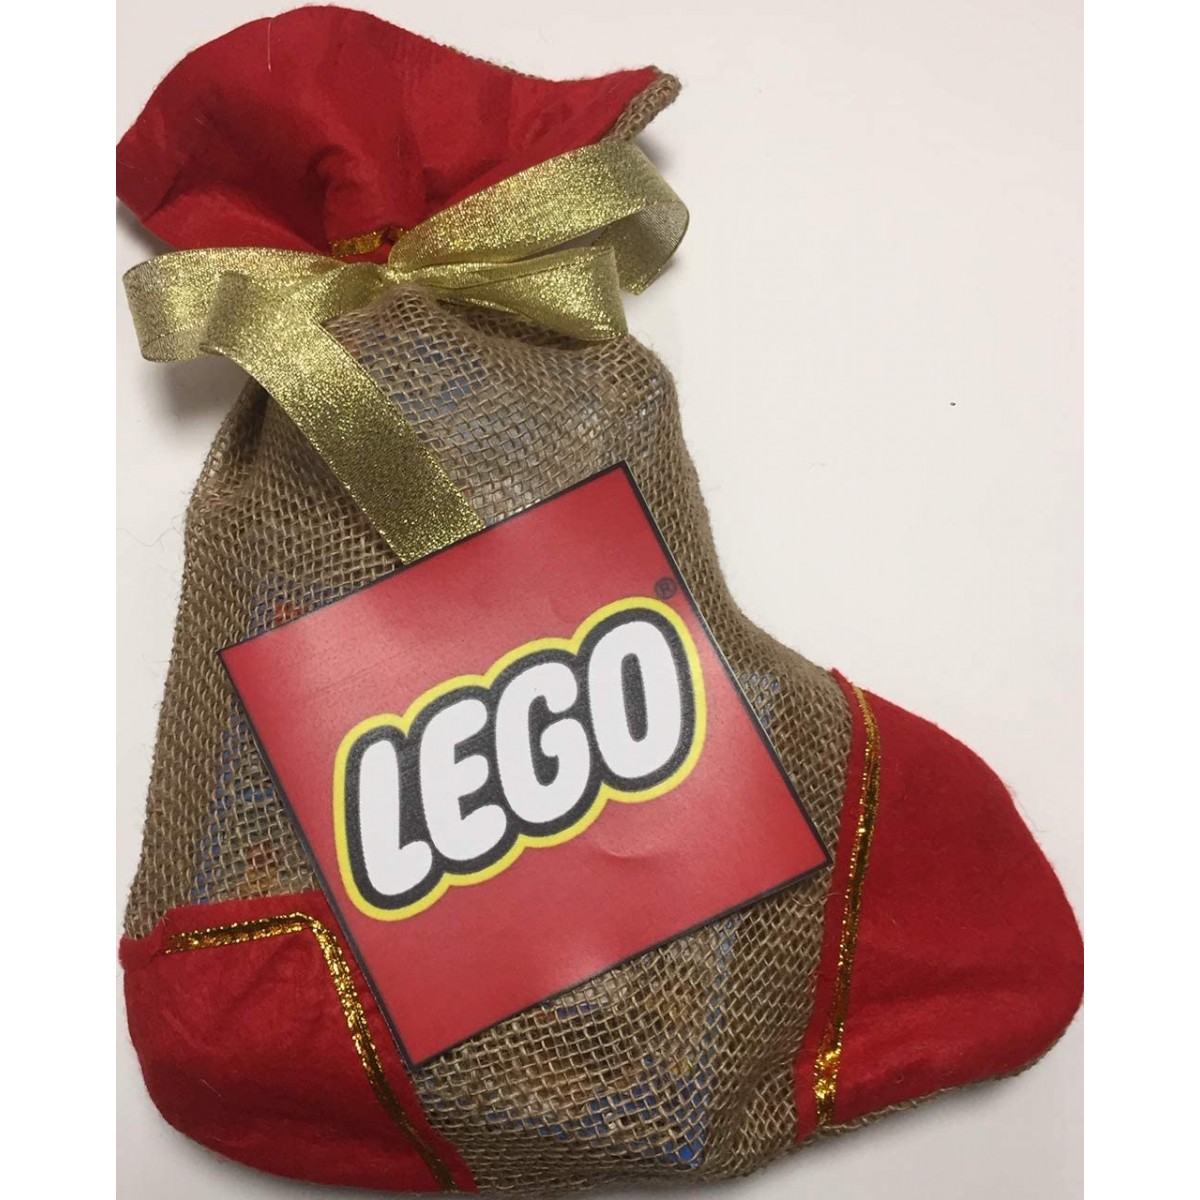 Canza della Befana LEGO, con dolci, per epifania